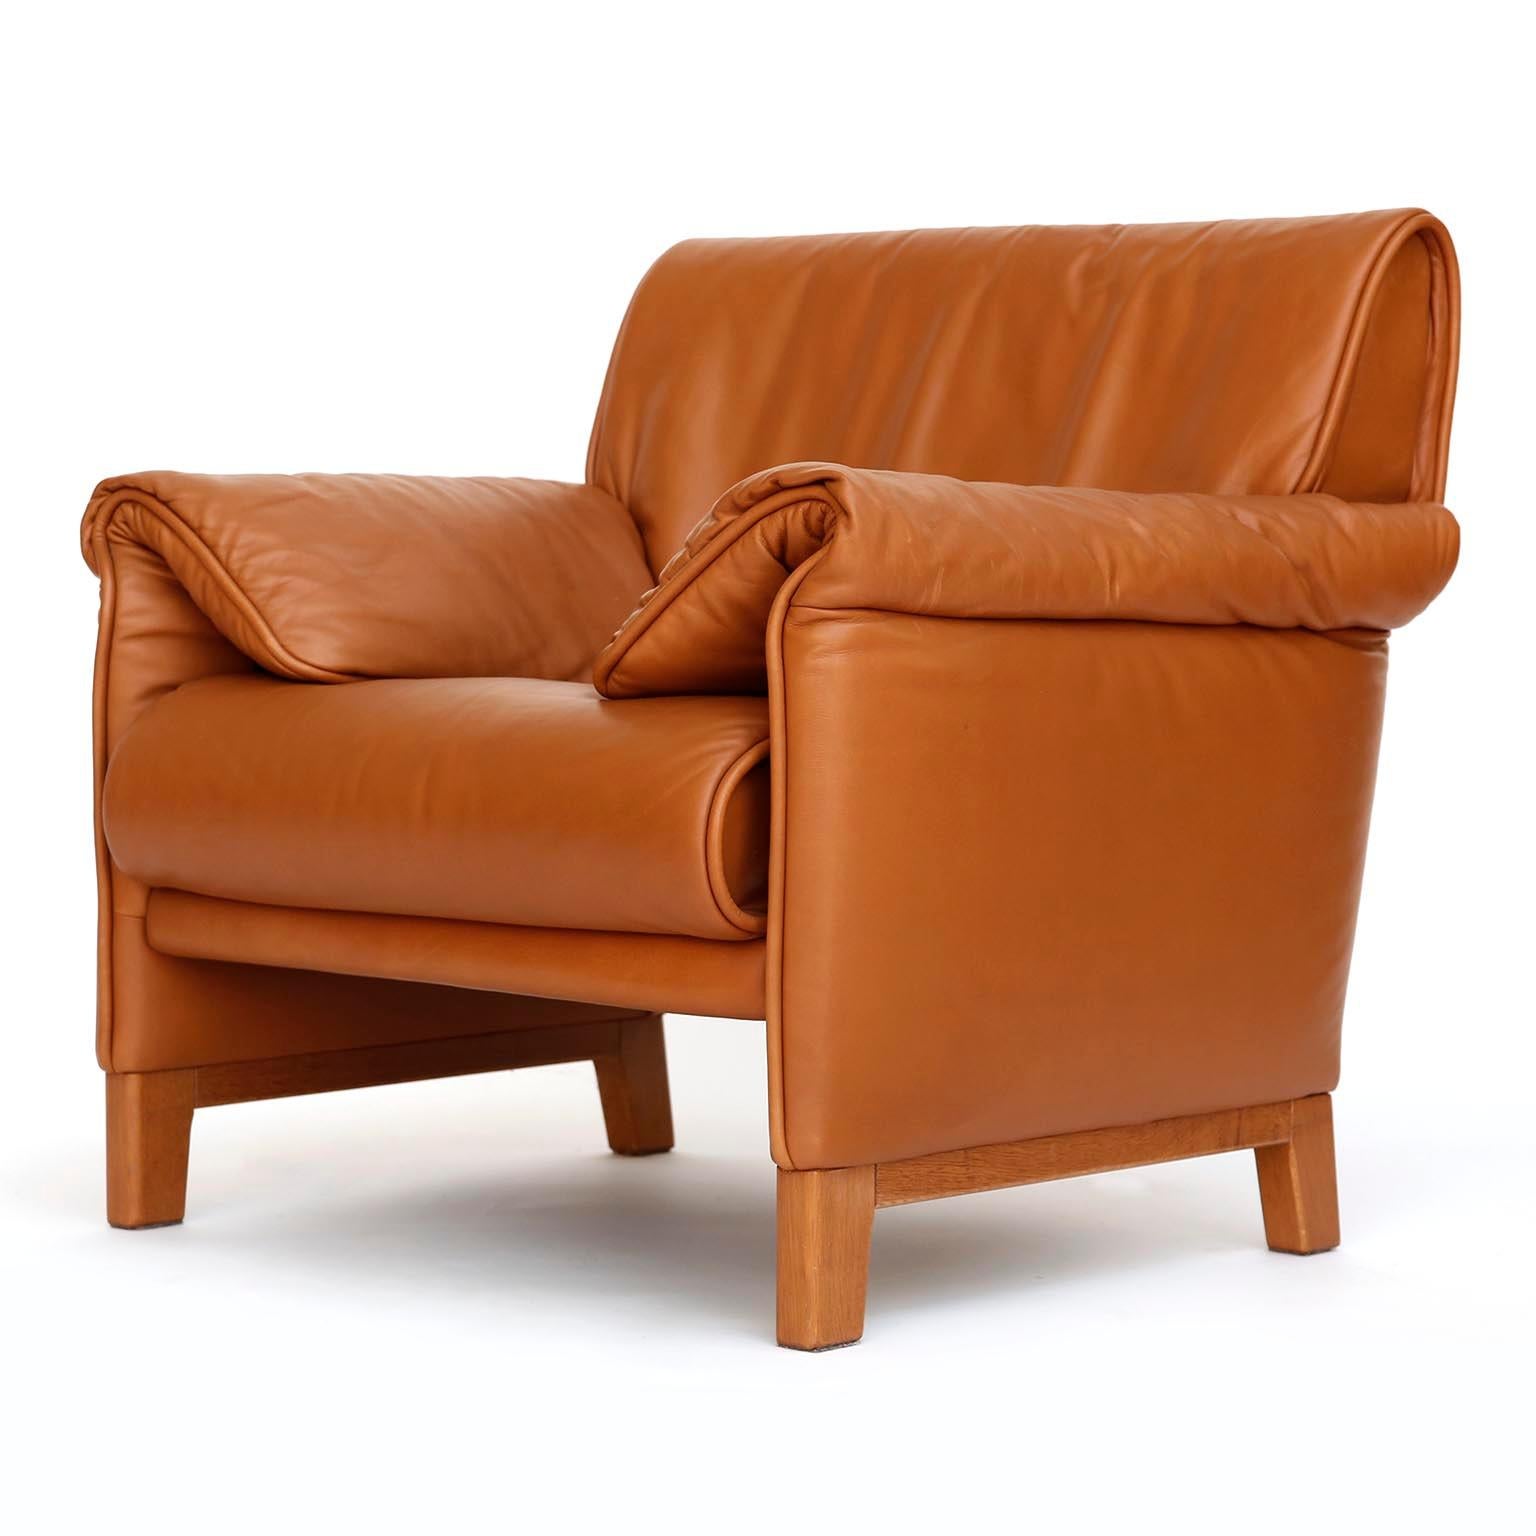 Einer von vier De Sede 'DS-14' Sesseln in warmem, hochwertigem, cognacbraunem Leder mit einem massiven Teakholzgestell, entworfen 1989 und hergestellt zwischen 1989 und 1997.
Die Stühle sind in sehr gutem und fast neuem Zustand. Sie sind innen mit